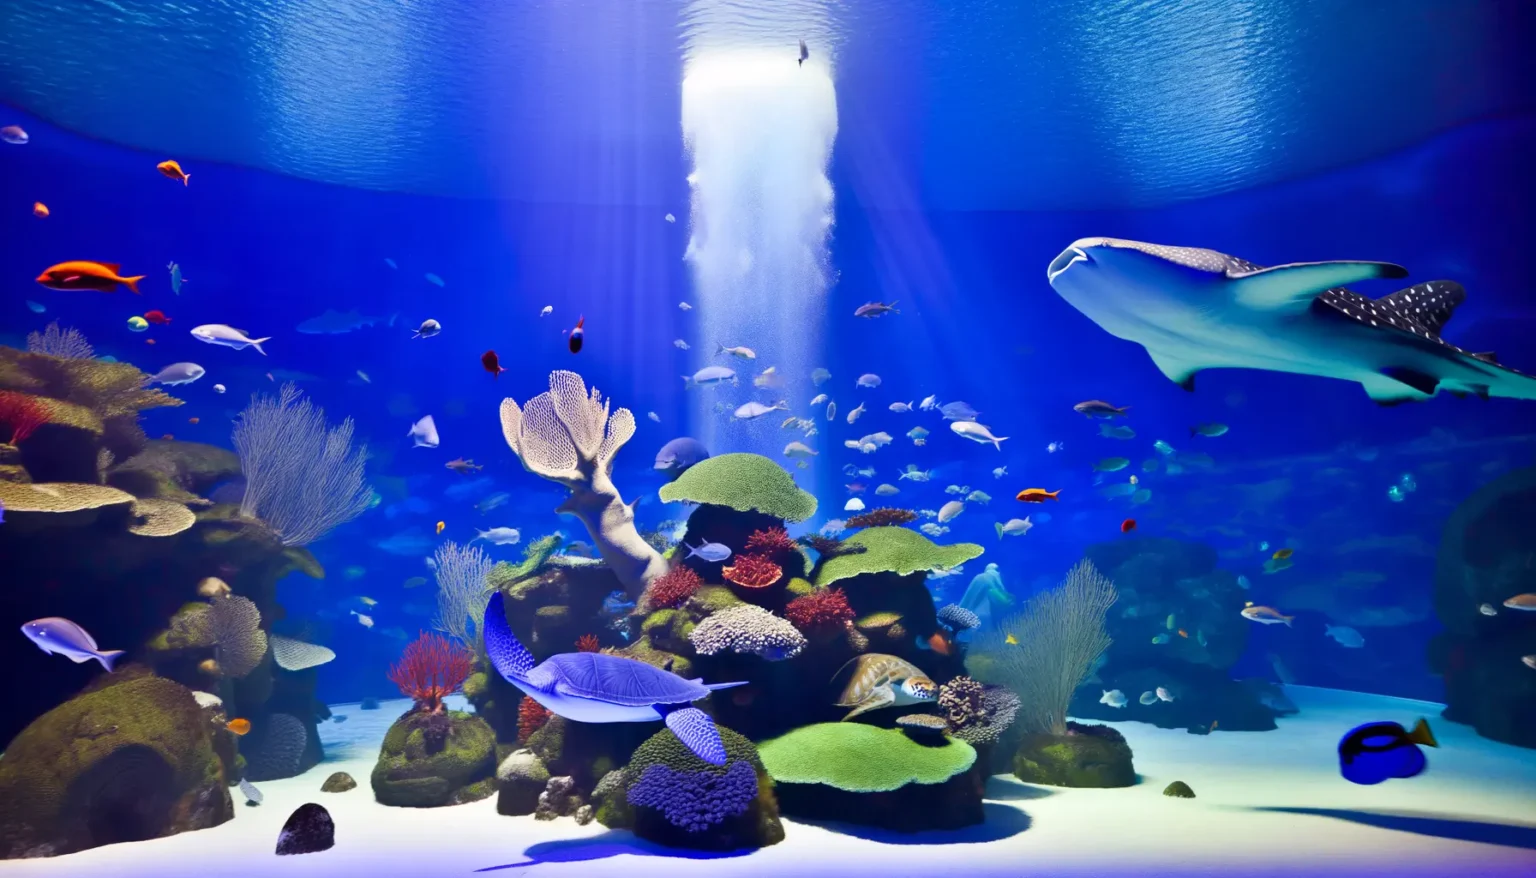 Lebendige Unterwasserszene in einem Aquarium mit einer Vielzahl von bunten Fischen, die um Korallenriffe schwimmen, während ein großer Mantarochen elegant durch das Wasser gleitet, das von oben mit strahlendem Licht beleuchtet wird.